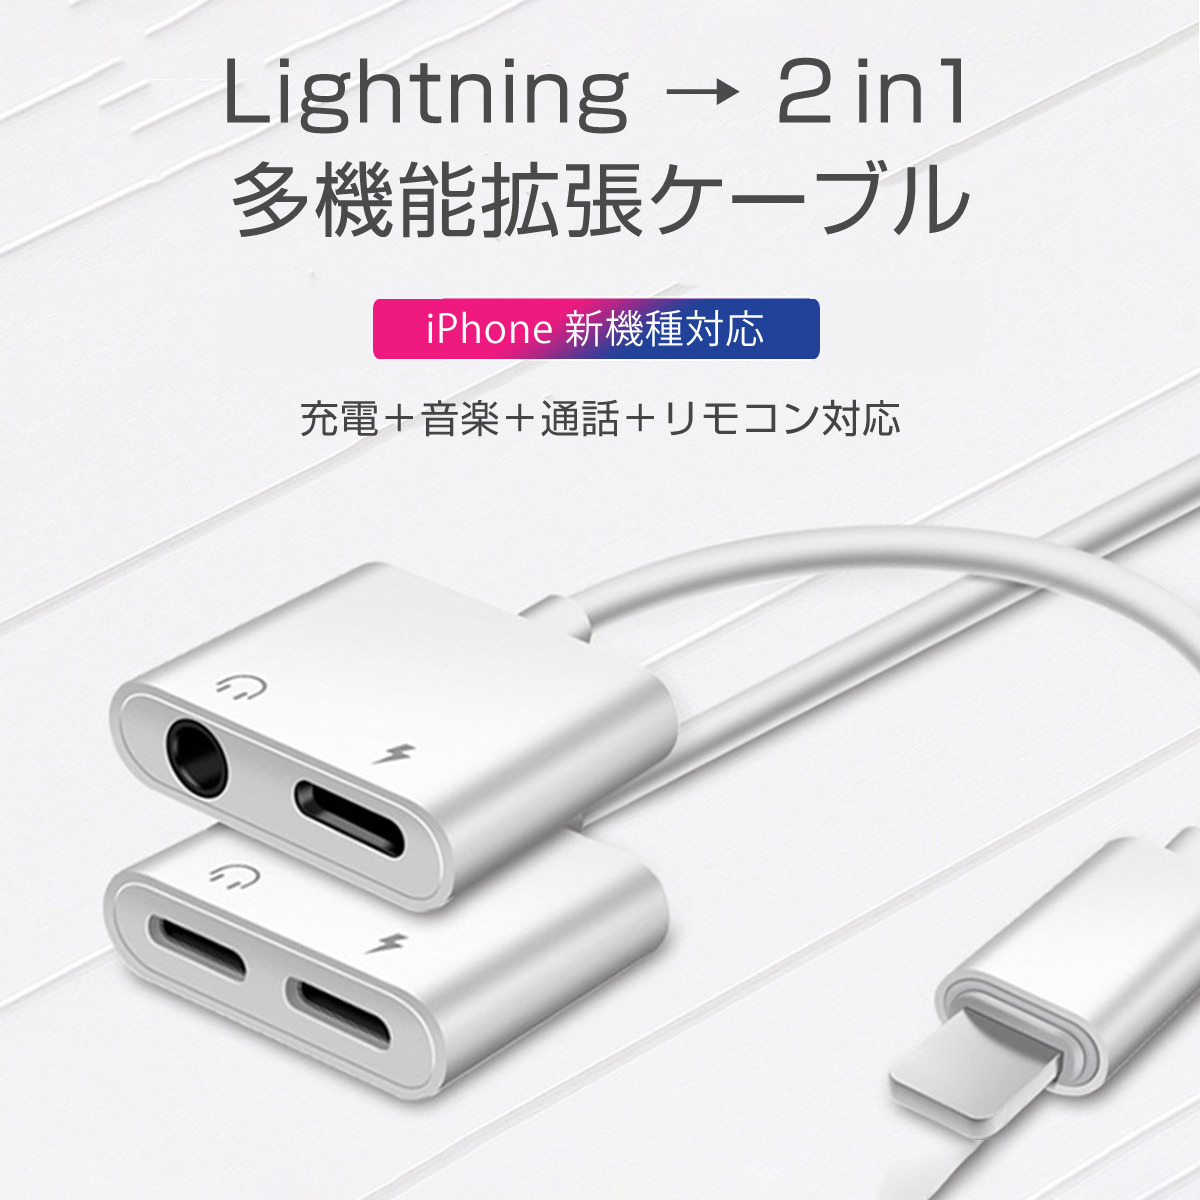 上品なスタイル iPhone イヤホン 変換アダプタ ライトニング ケーブル スマホ 3.5mm